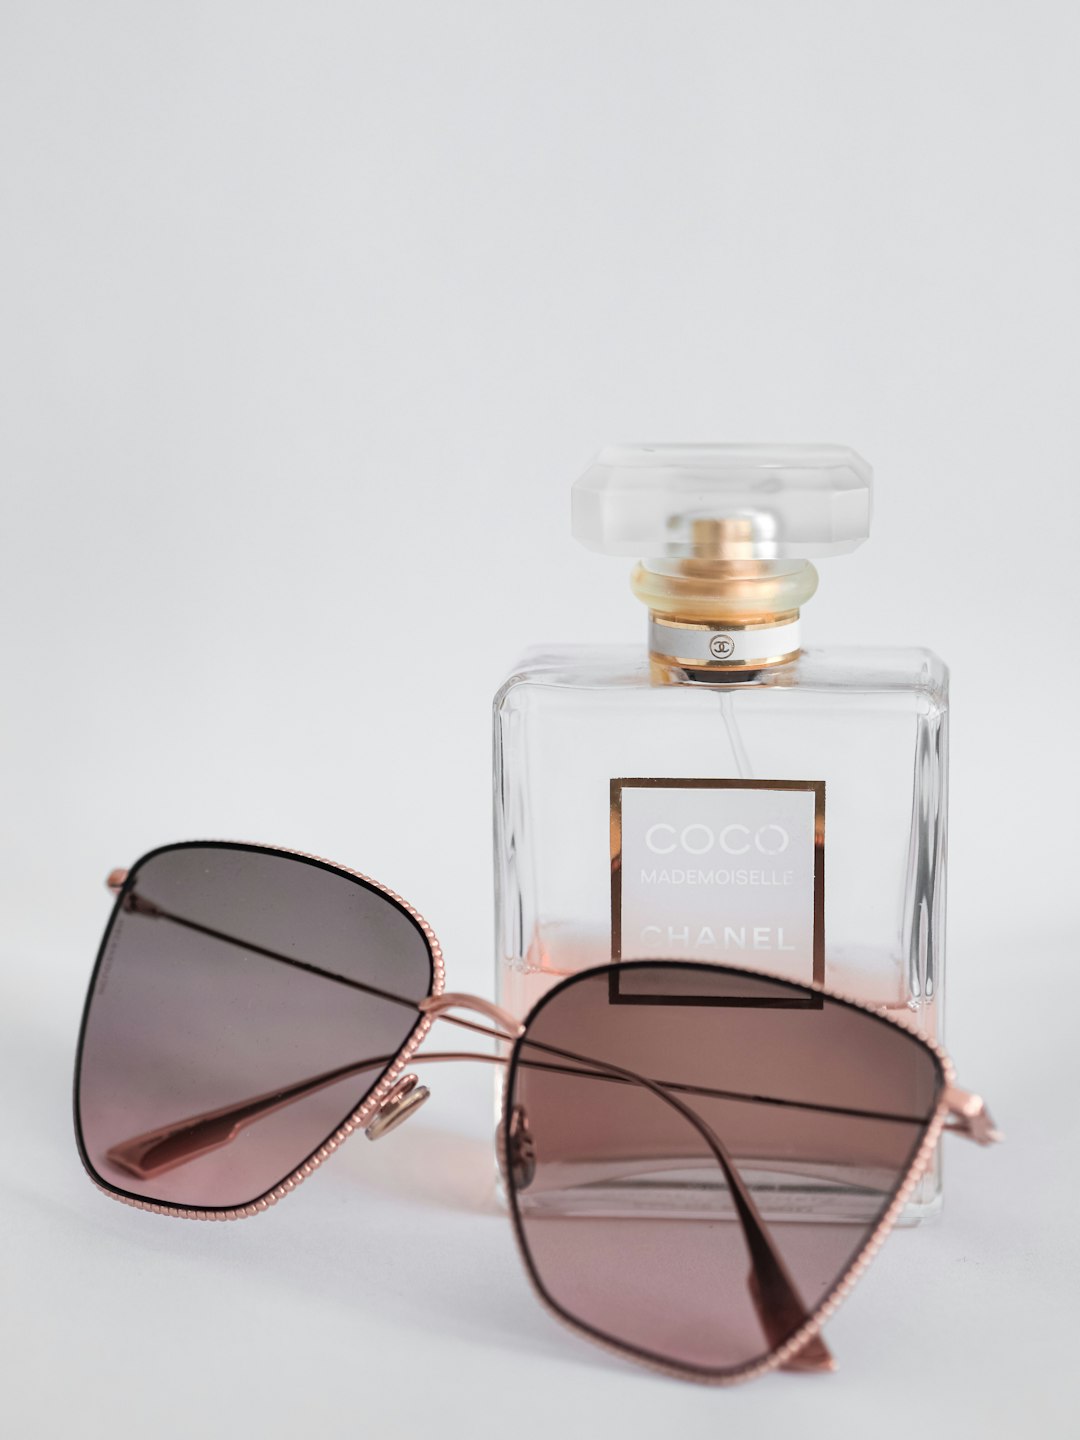 black framed sunglasses beside perfume bottle